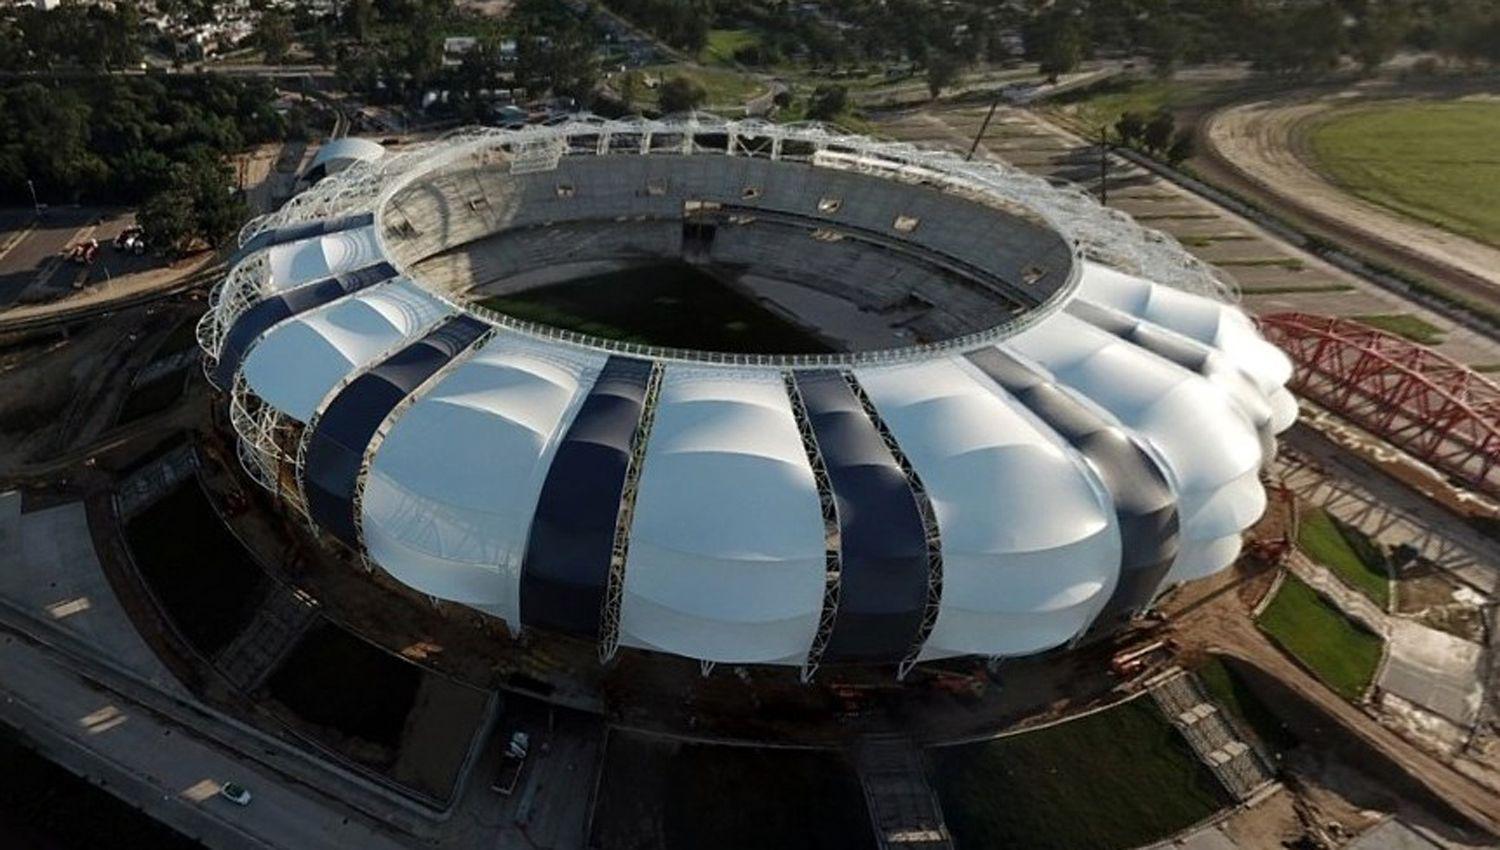 El Estadio Uacutenico de Santiago del Estero podriacutea ser sede de las finales de la Copa Sudamericana 202122 y 23